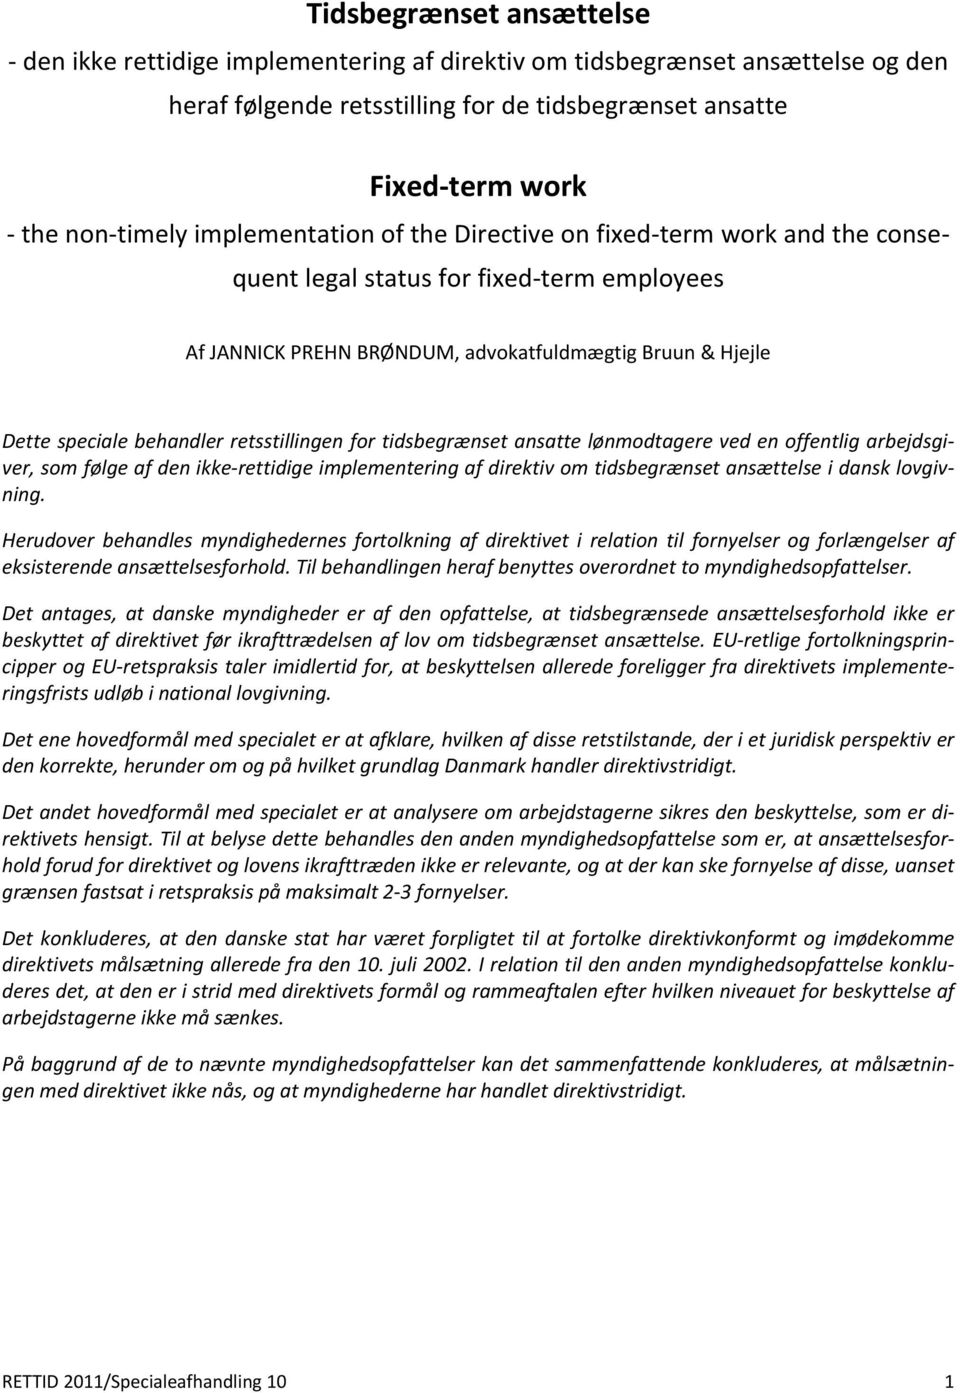 retsstillingen for tidsbegrænset ansatte lønmodtagere ved en offentlig arbejdsgiver, som følge af den ikke rettidige implementering af direktiv om tidsbegrænset ansættelse i dansk lovgivning.